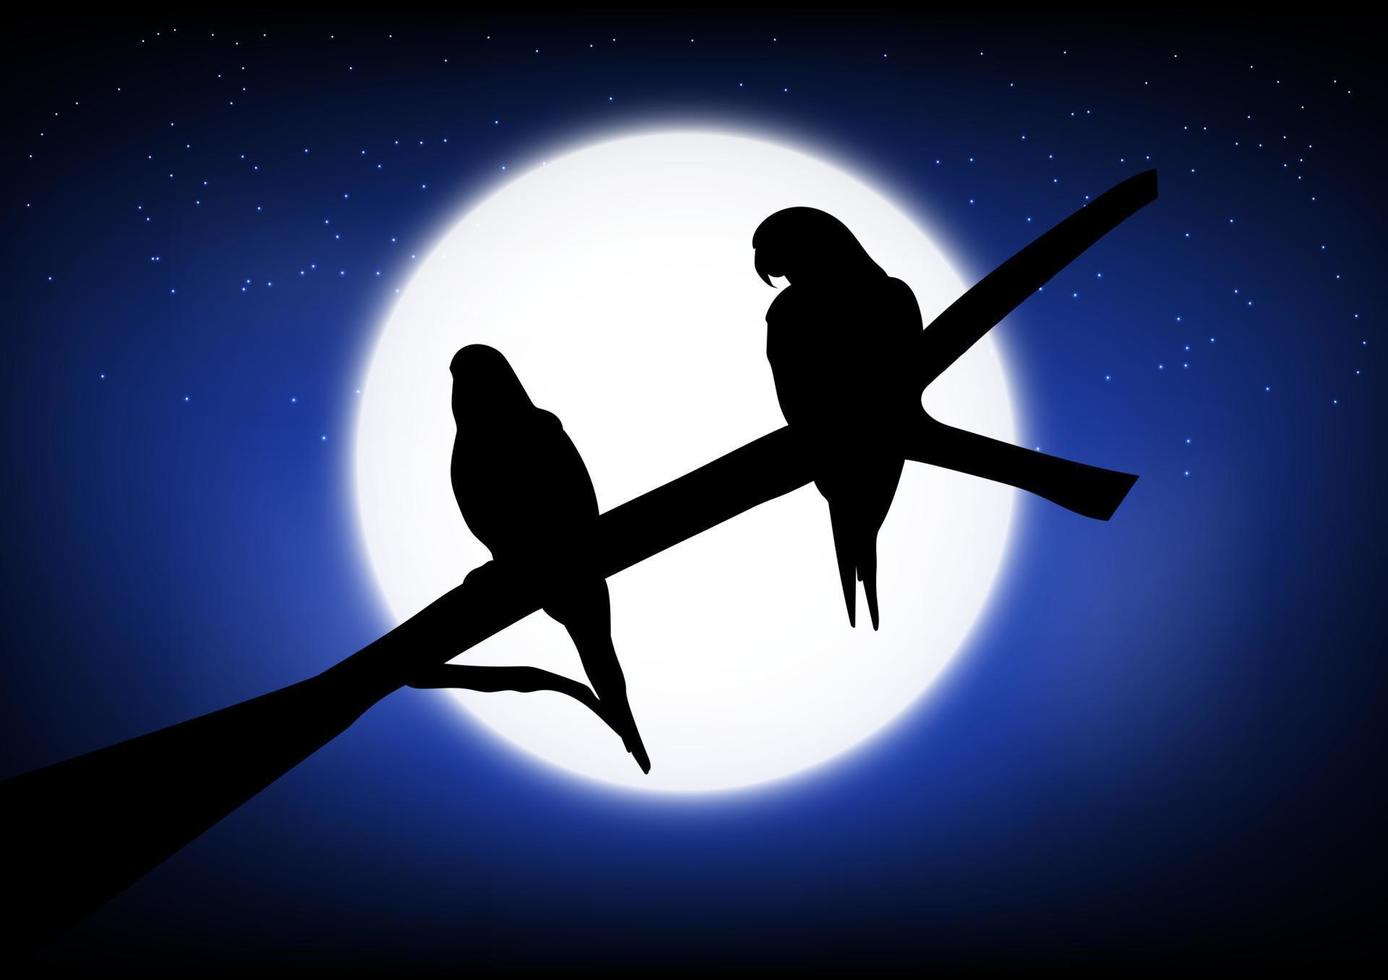 graphique dessin silhouette deux oiseaux debout sur une branche avec fond de lune une nuit, illustration vectorielle vecteur